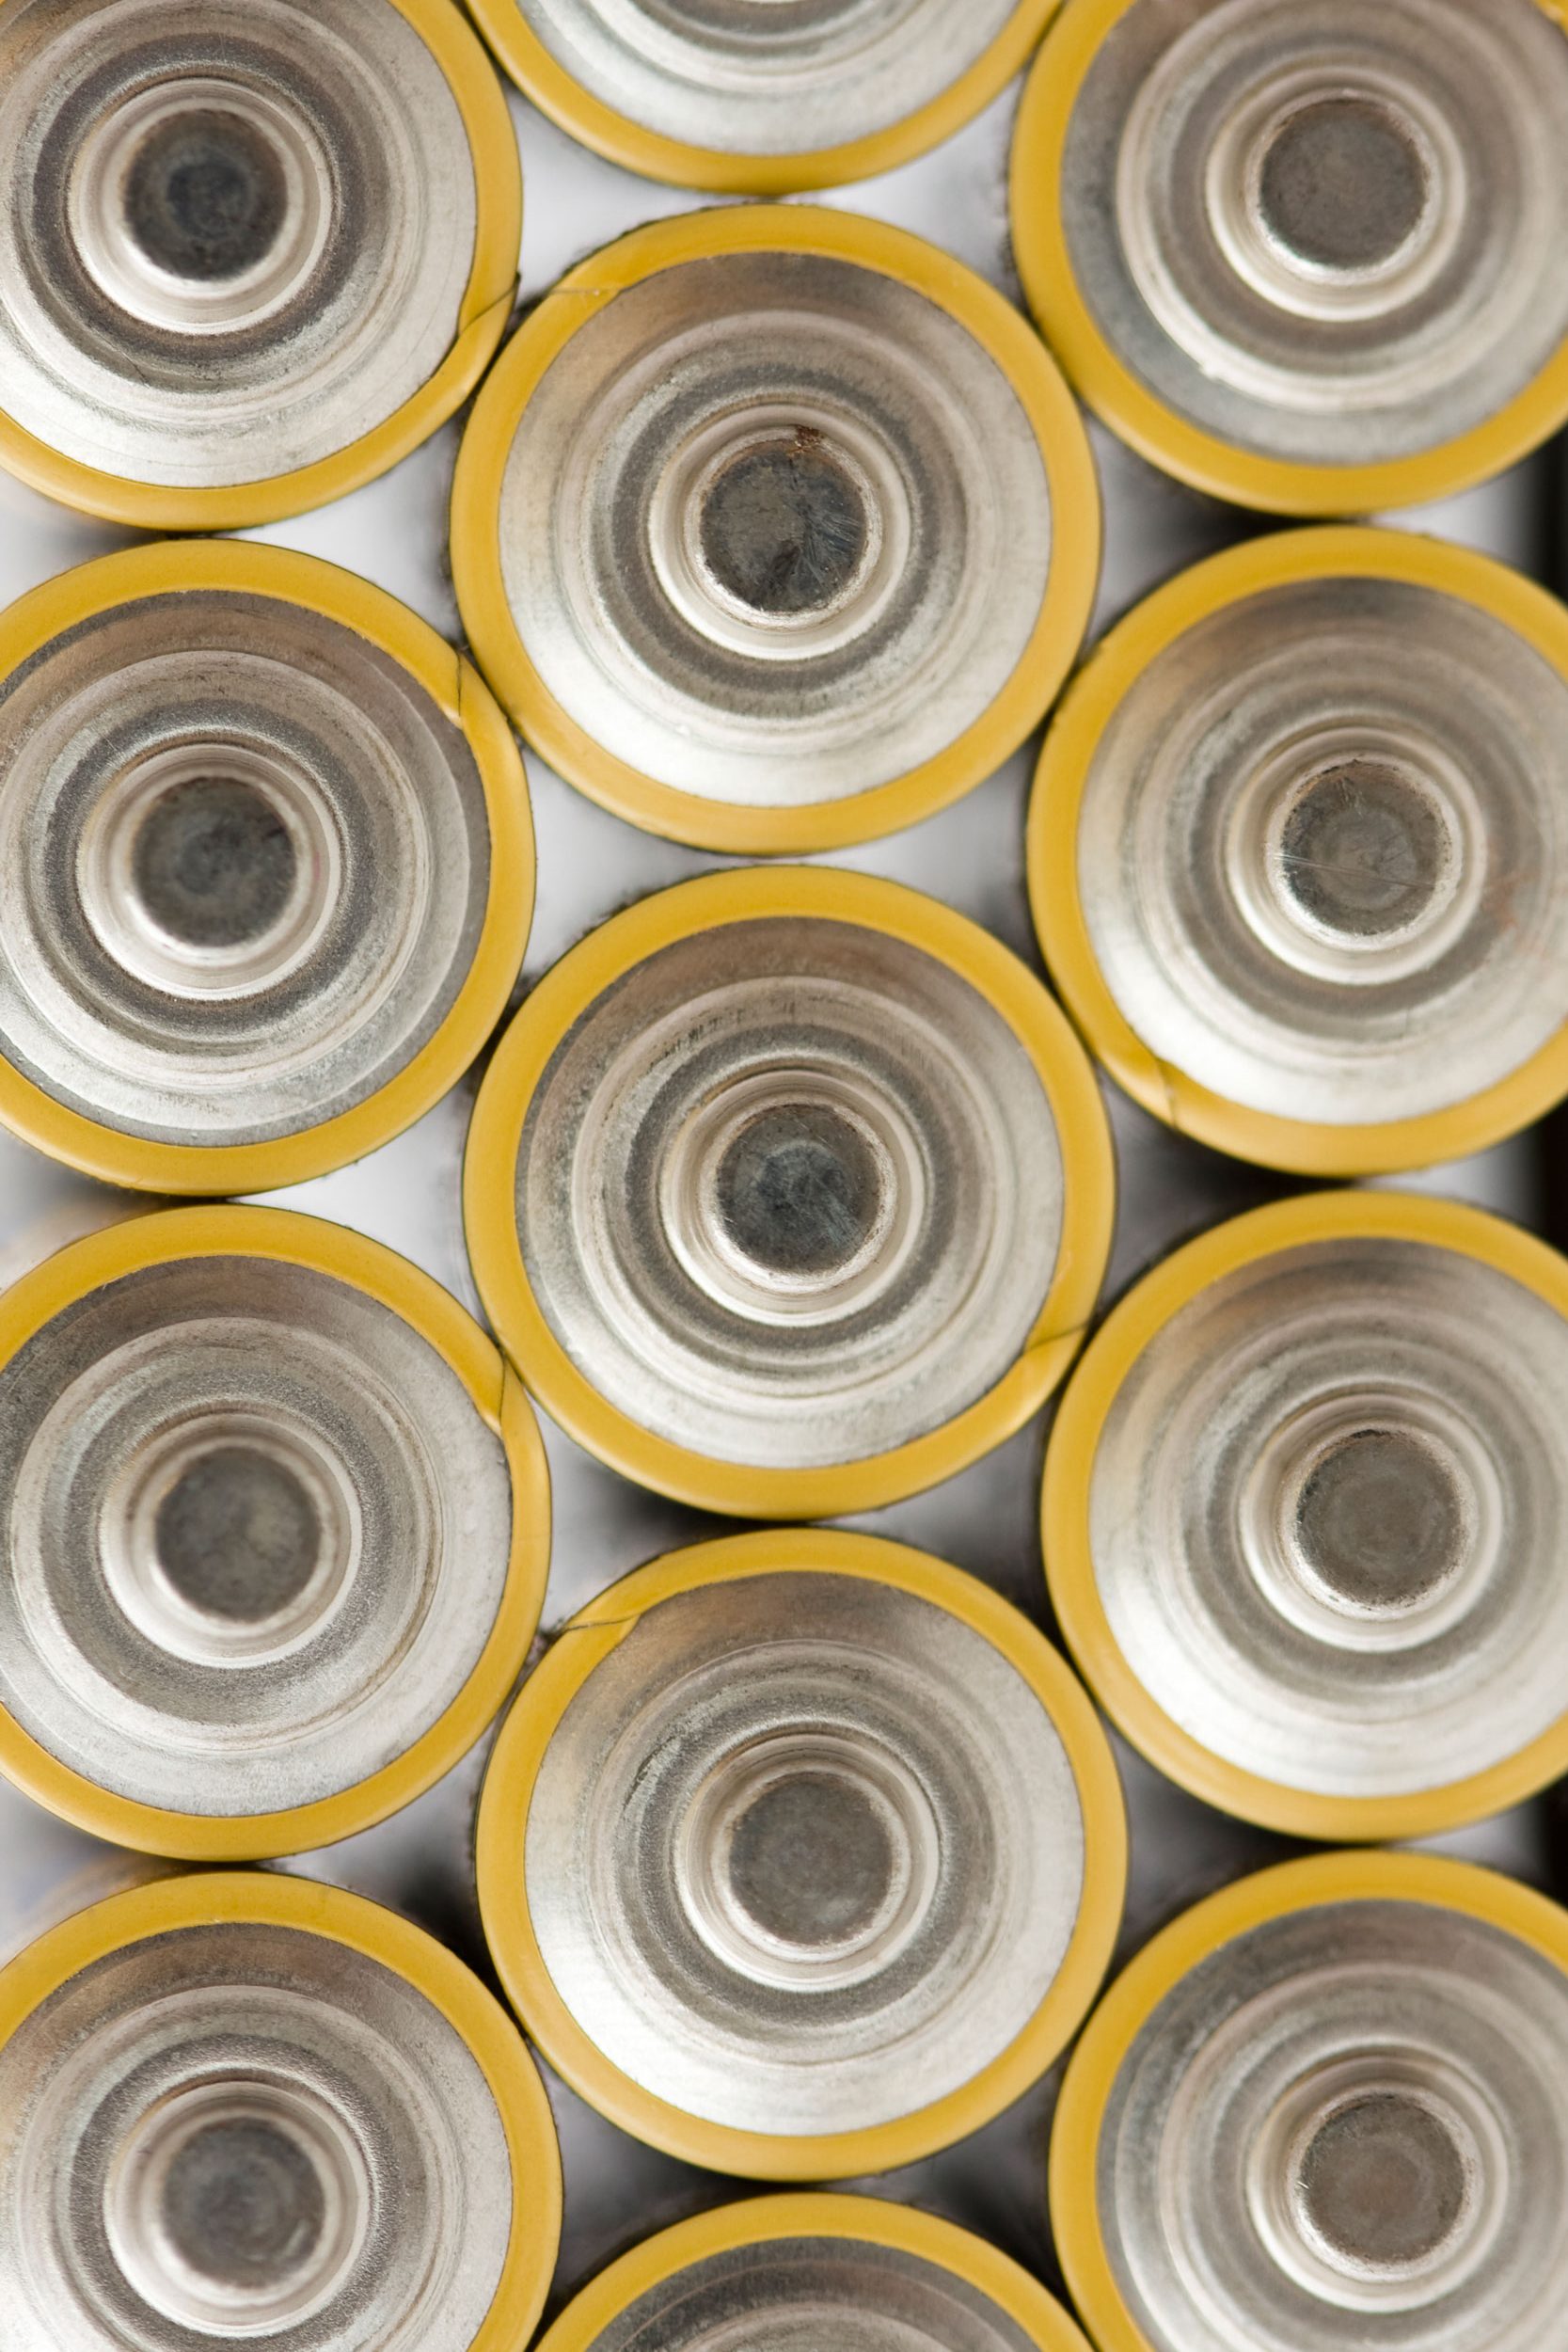 img-erp-org-batteries-168275732-e1618555800226